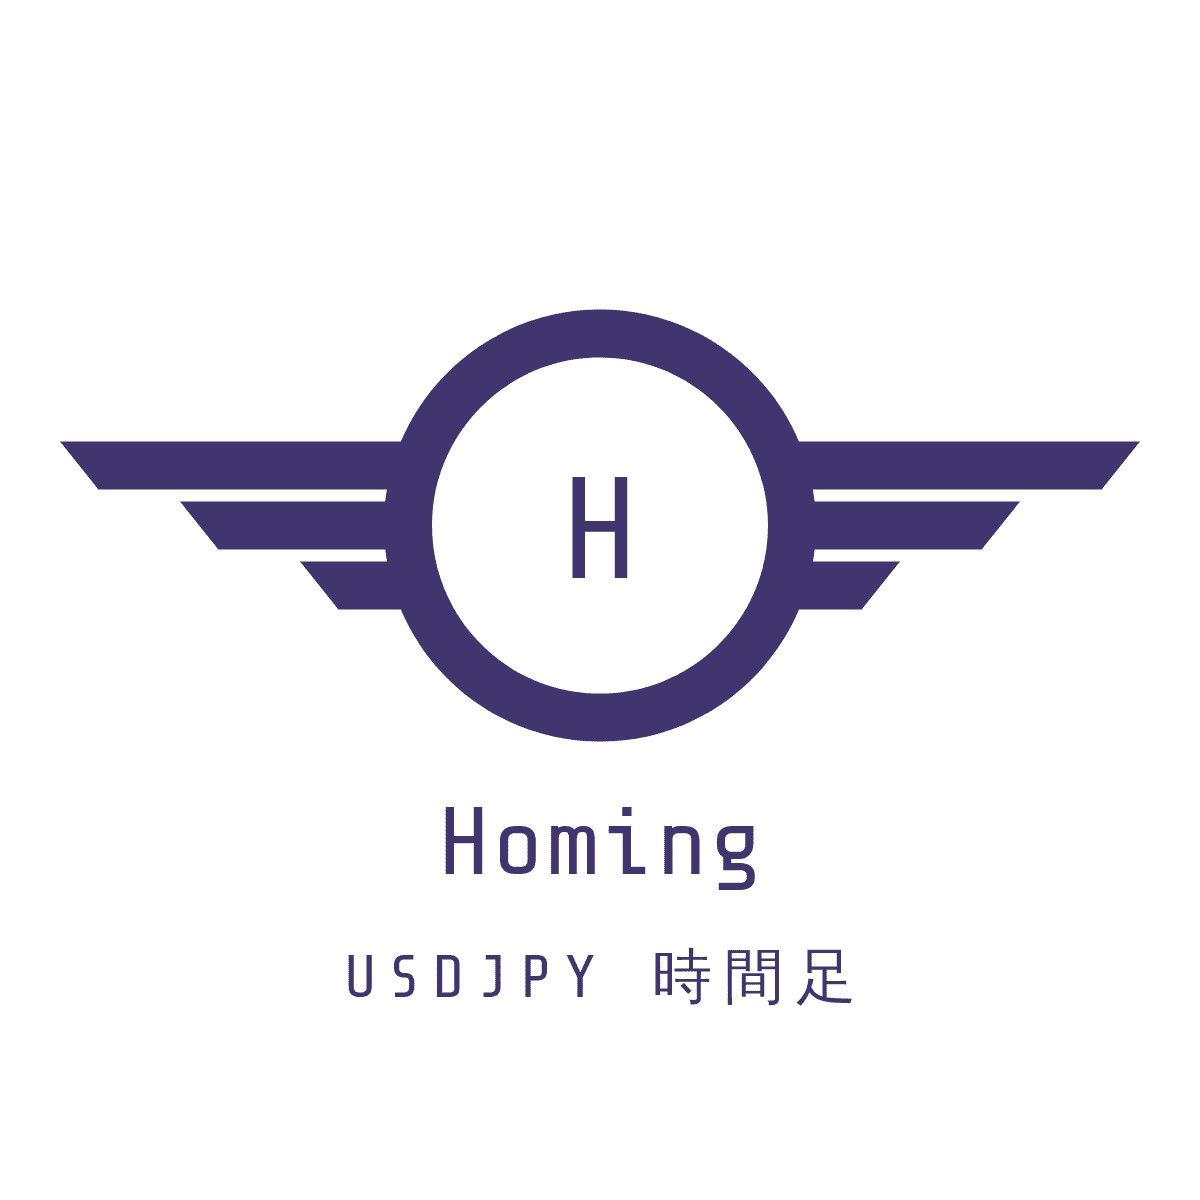 Homing USDJPY 時間足 自動売買